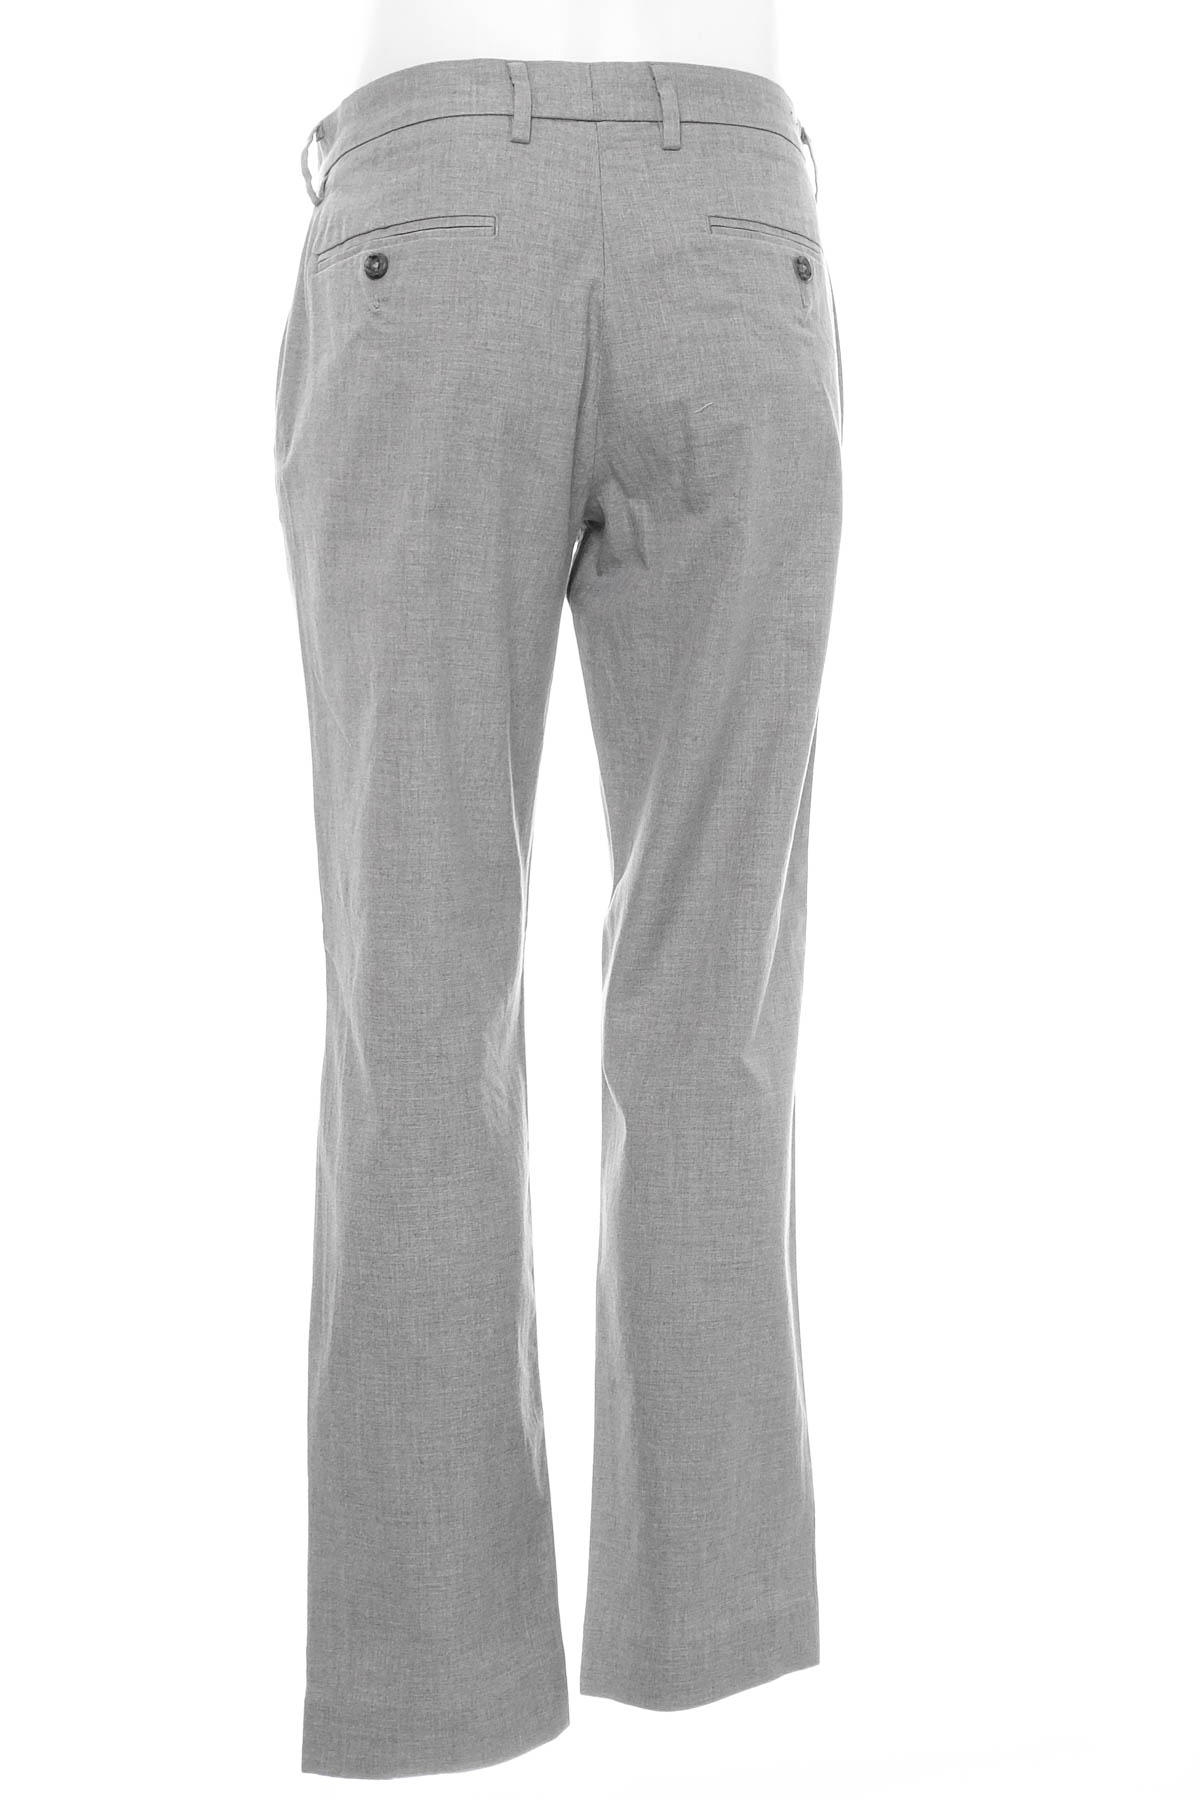 Pantalon pentru bărbați - J.CREW - 1